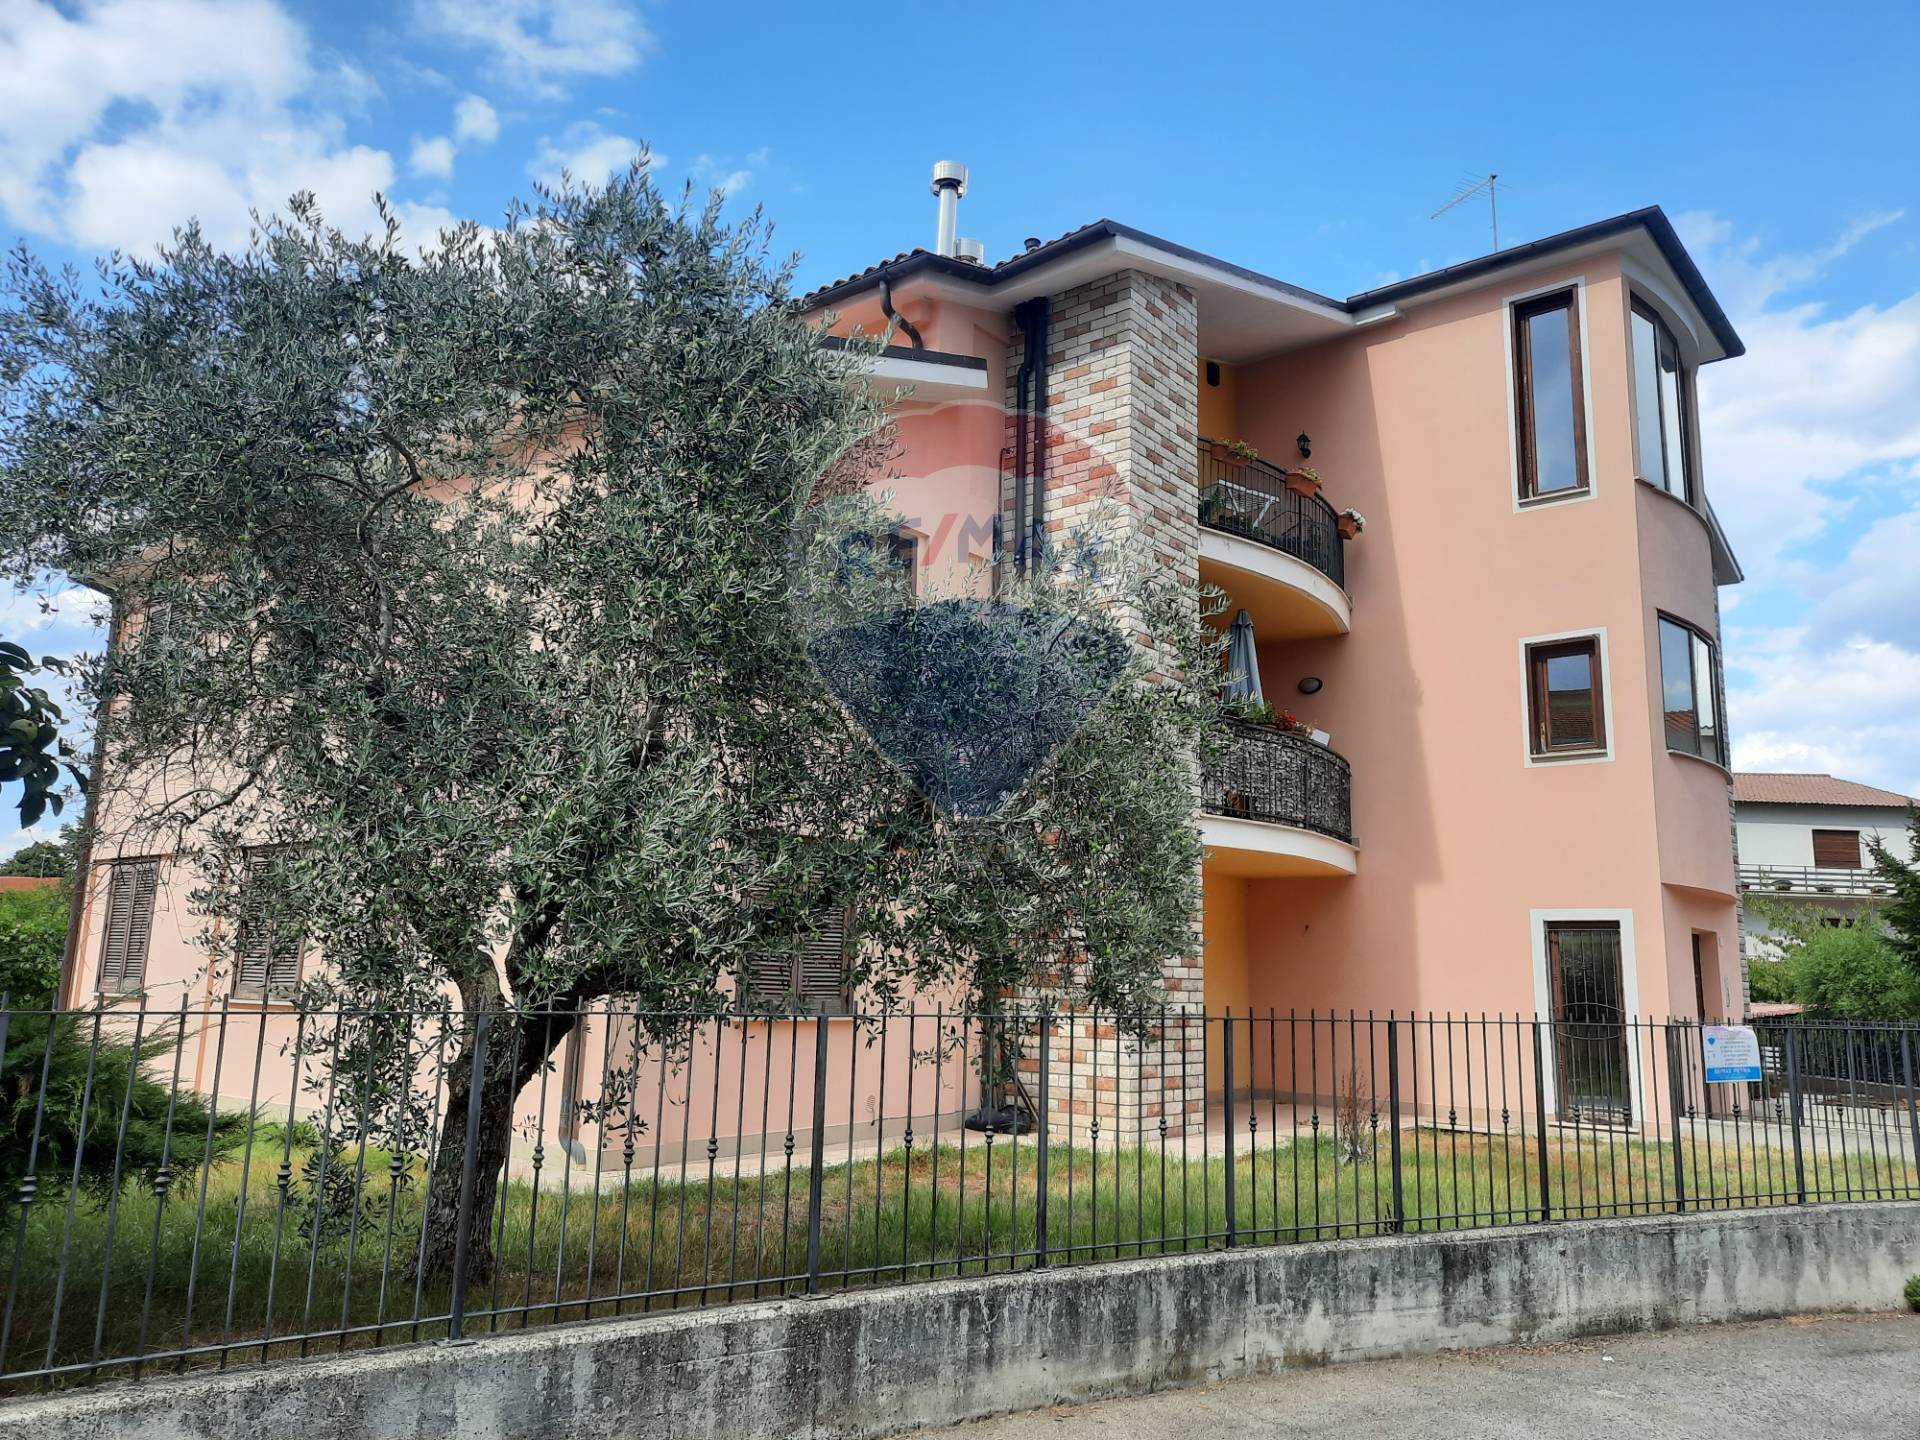 Appartamento in vendita a Attigliano, 4 locali, prezzo € 79.000 | CambioCasa.it